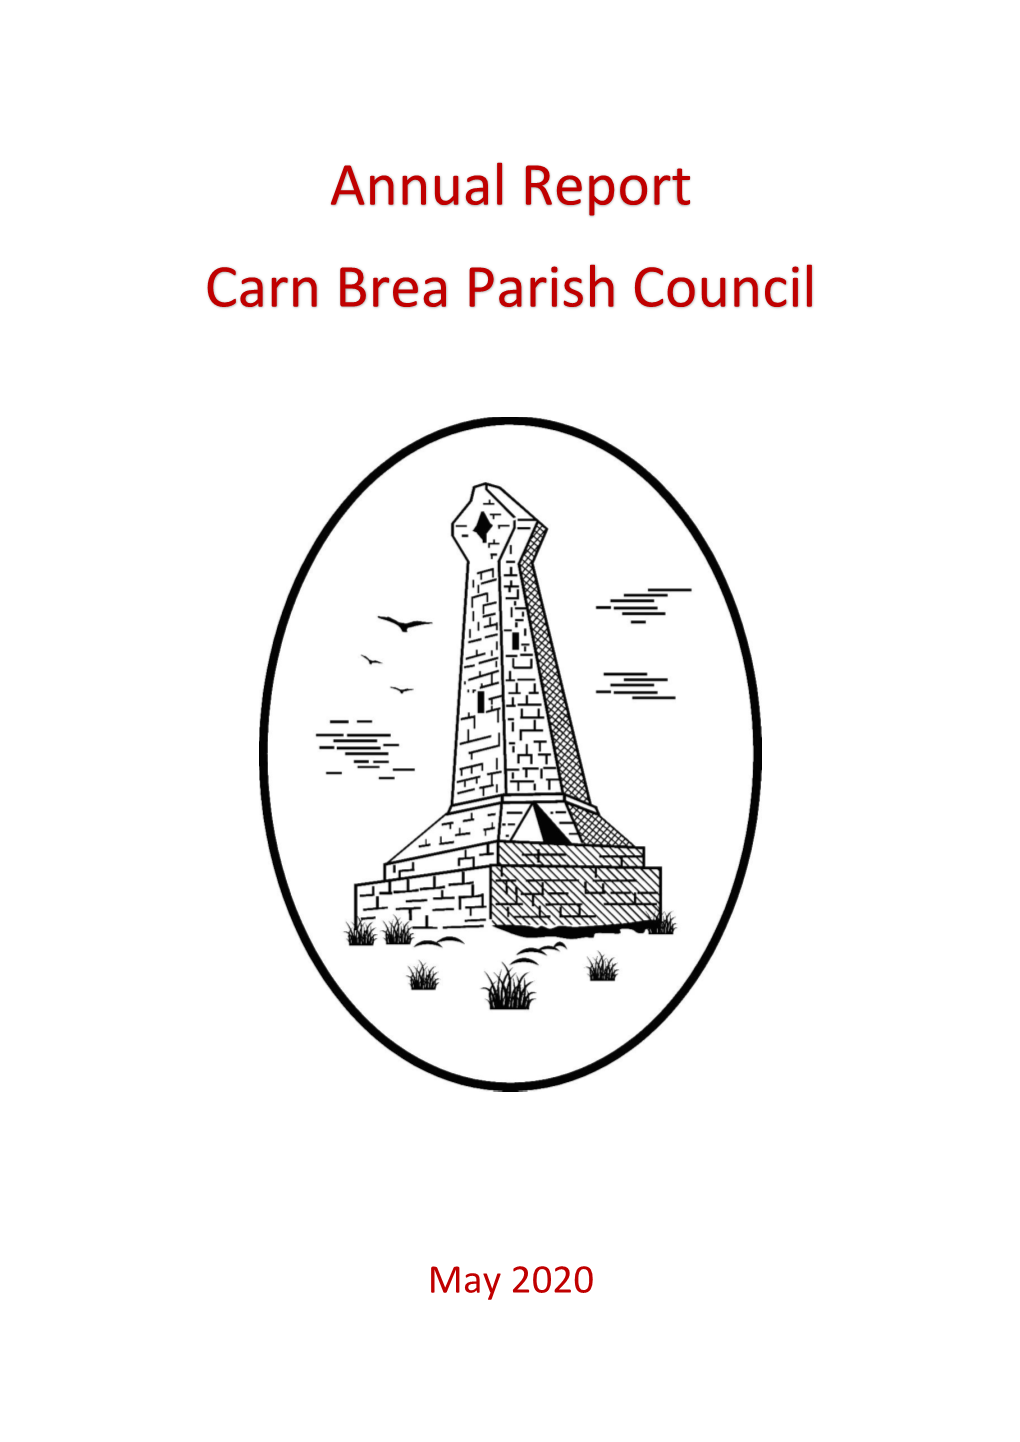 Annual Report Carn Brea Parish Council